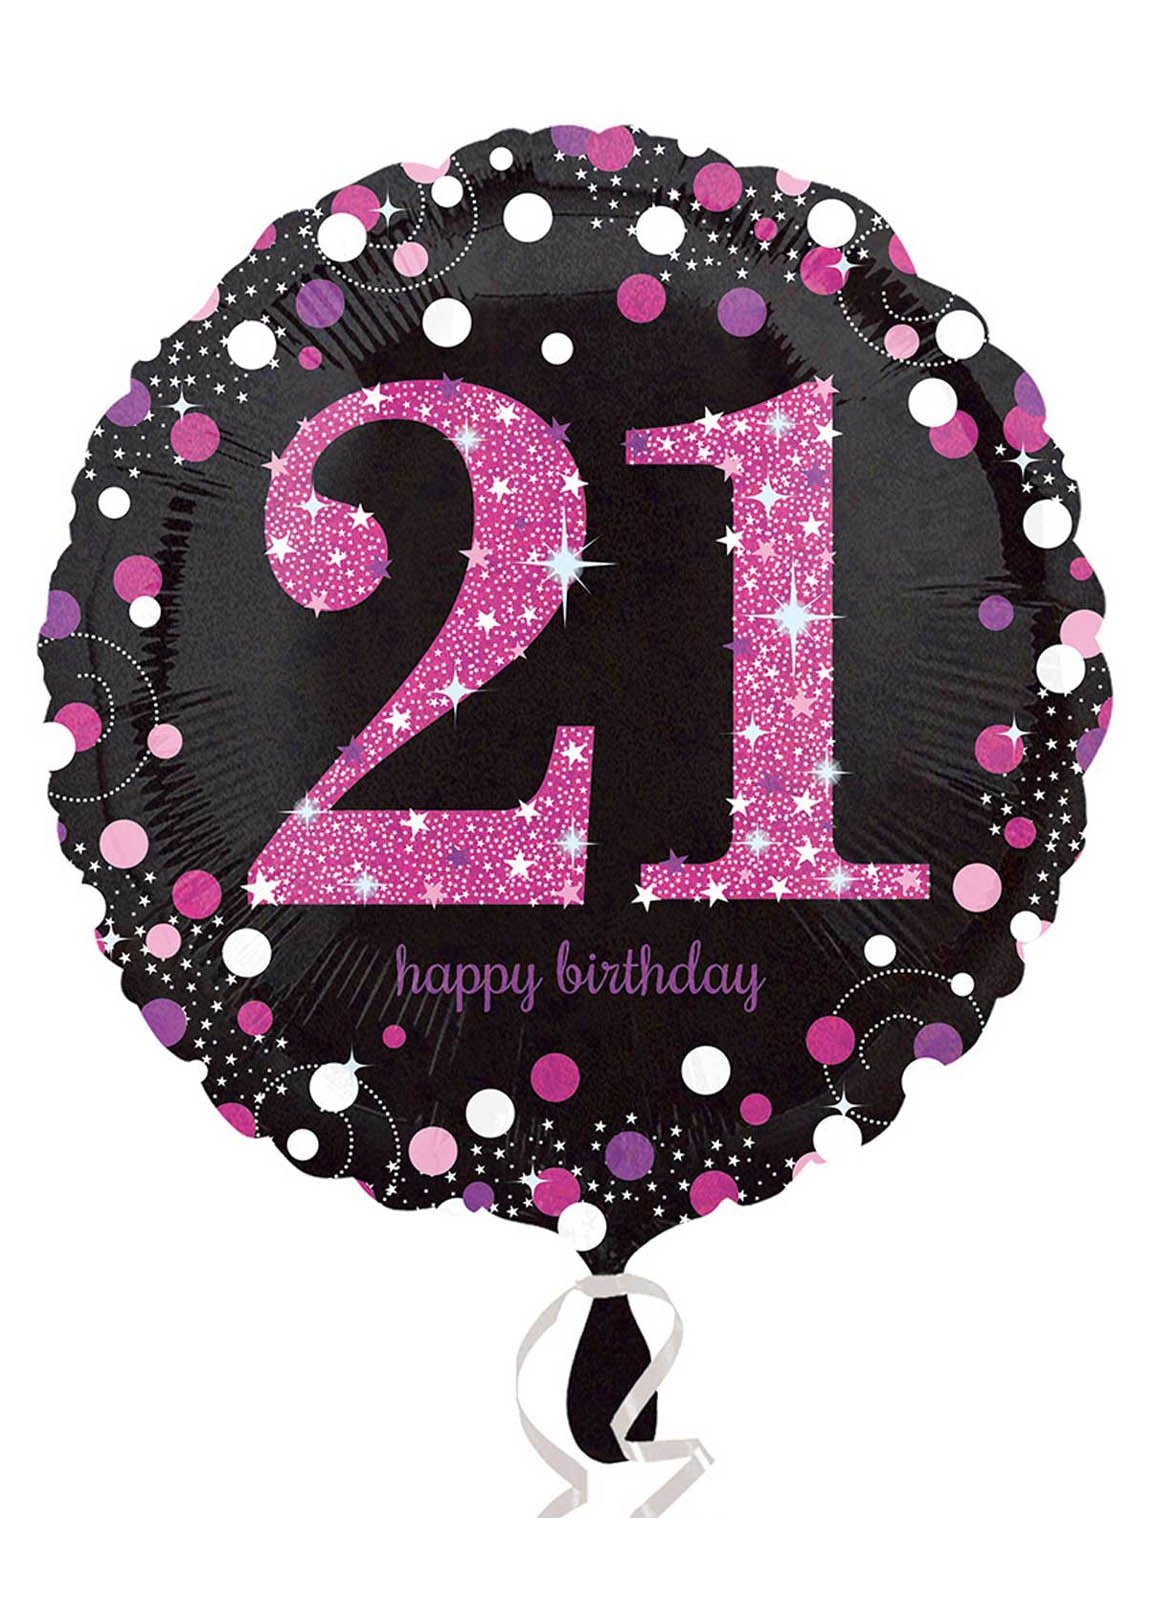 21st Birthday Balloons